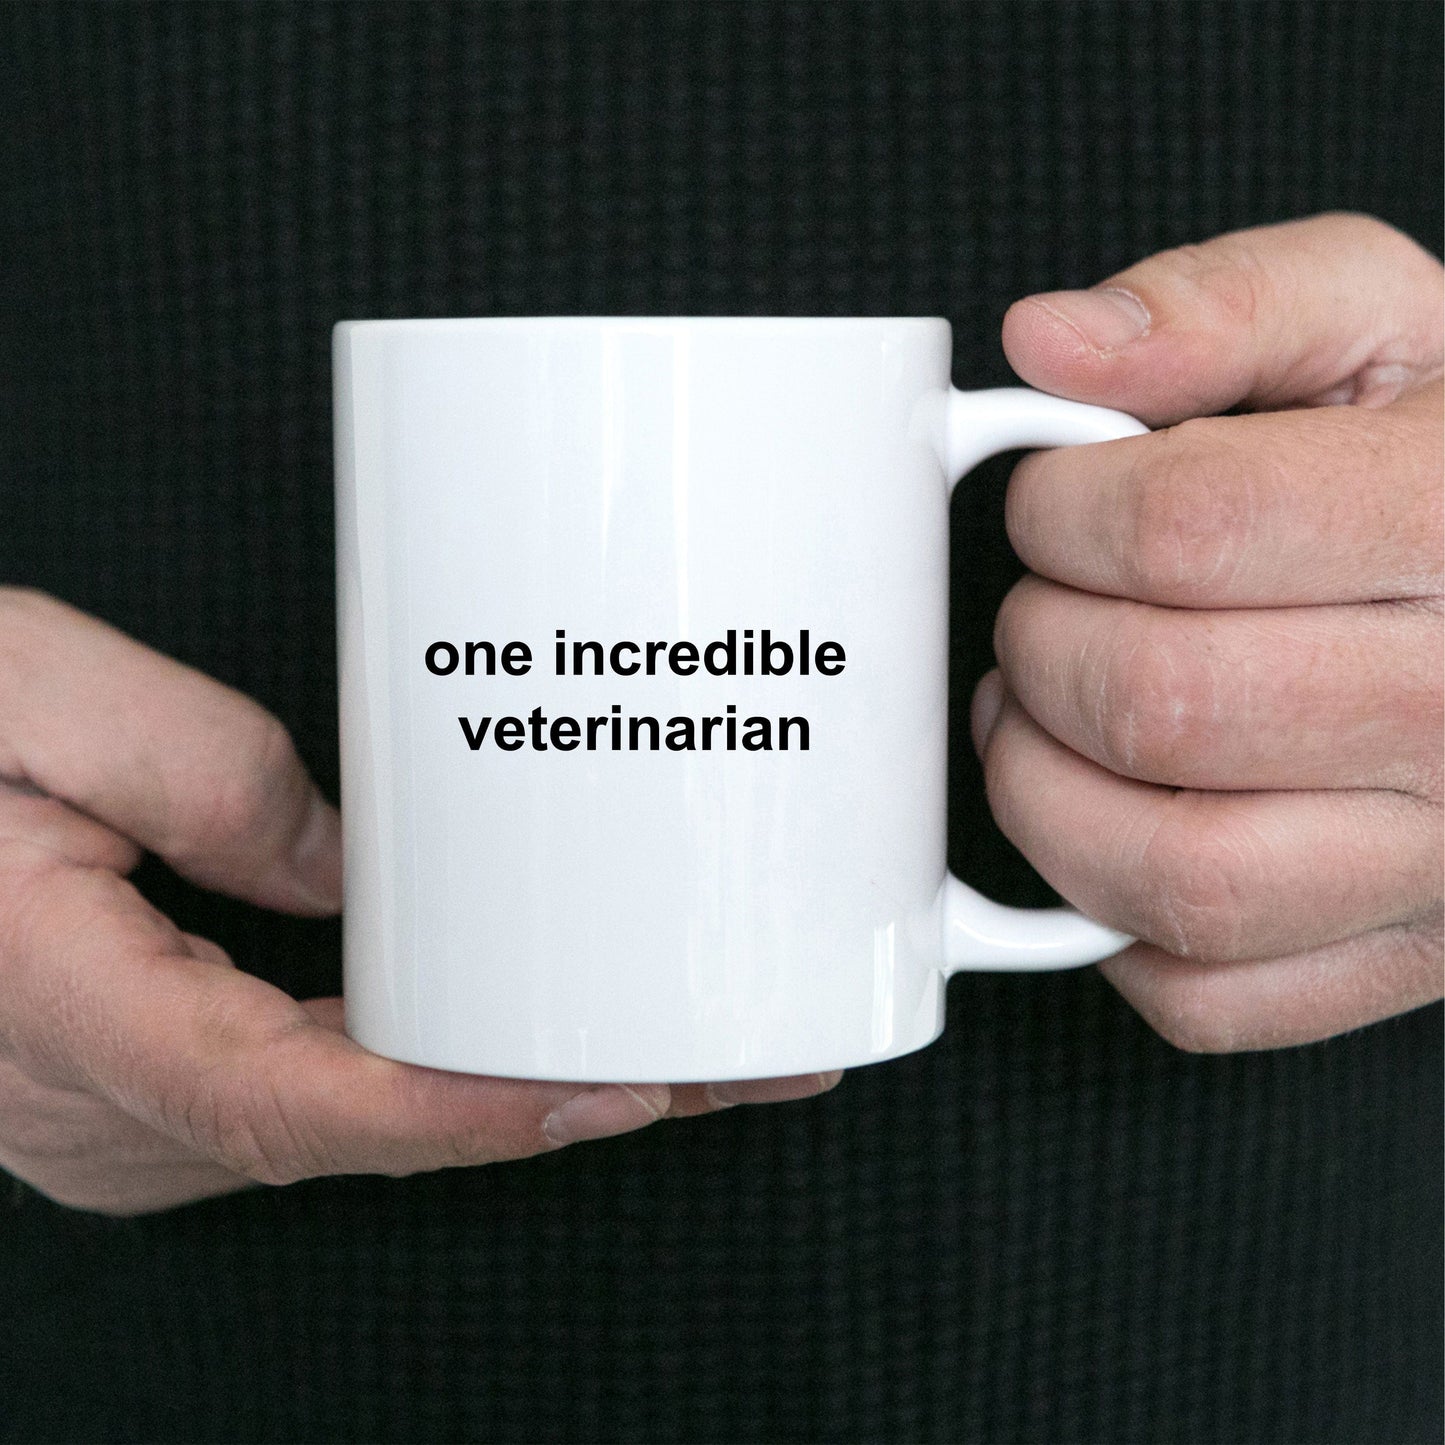 One Incredible Veterinarian Custom Ceramic Coffee Mug